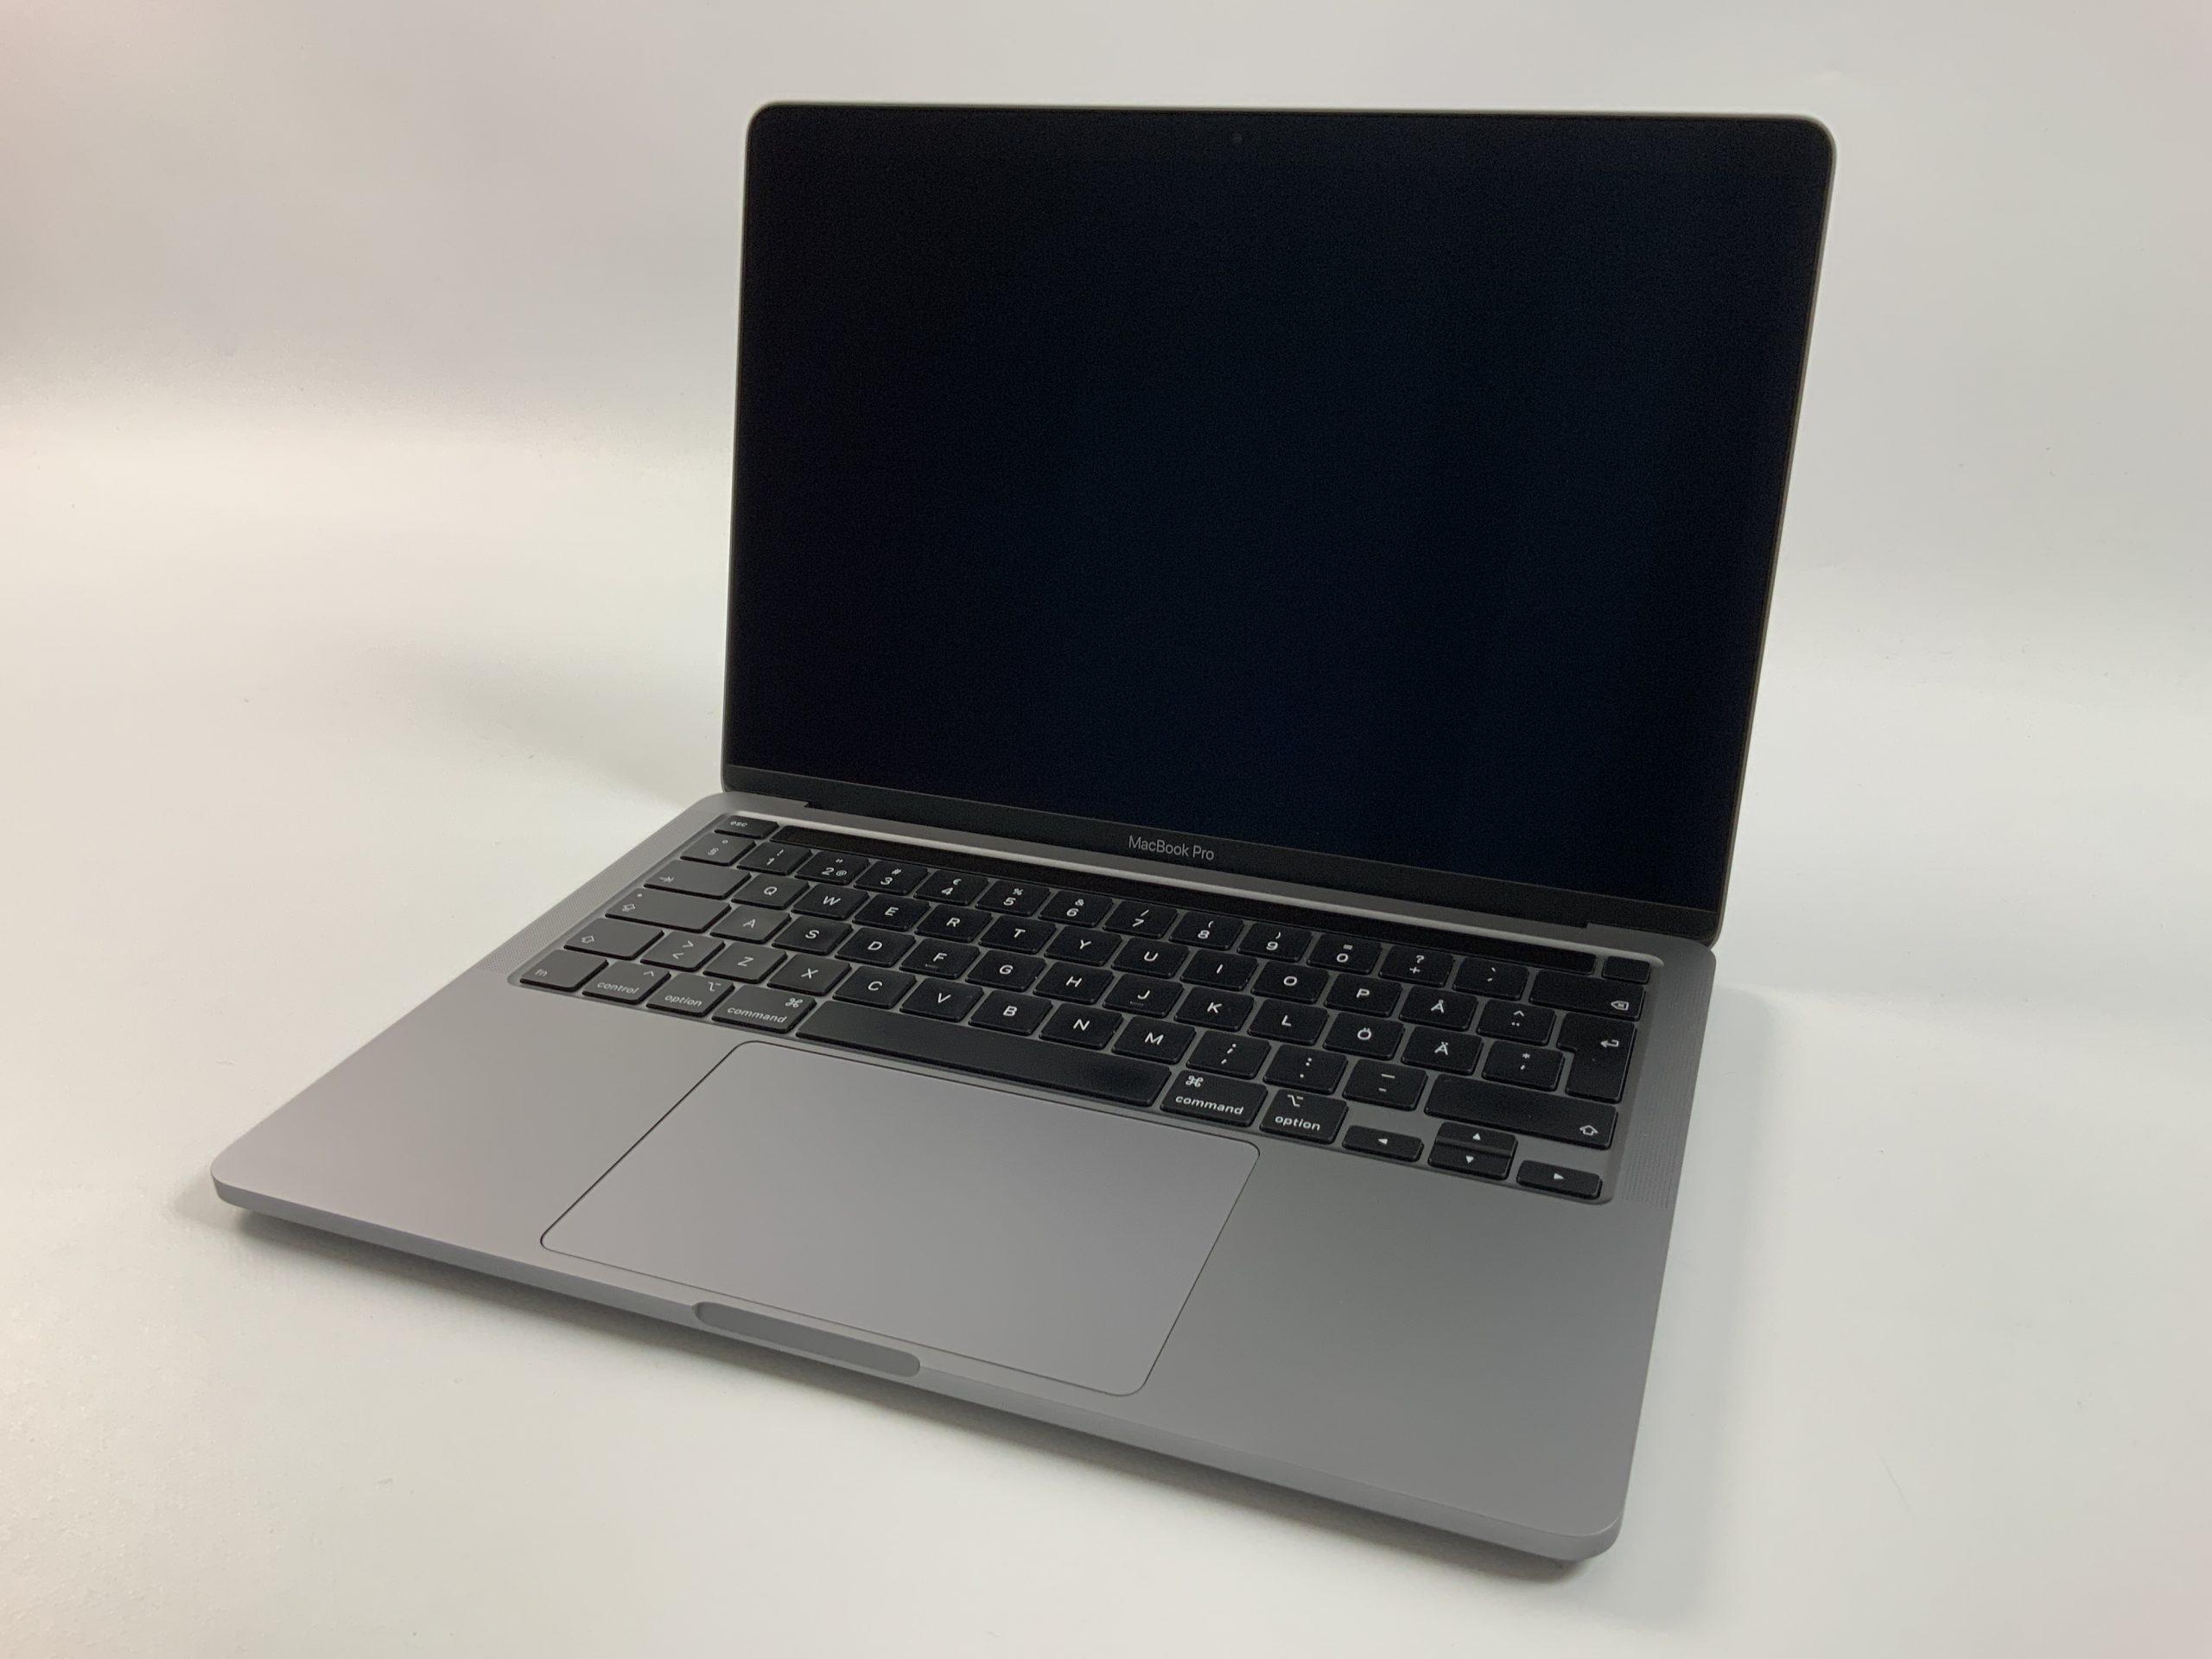 MacBook Pro 13" 4TBT Mid 2020 (Intel Quad-Core i7 2.3 GHz 32 GB RAM 1 TB SSD), Space Gray, Intel Quad-Core i7 2.3 GHz, 32 GB RAM, 1 TB SSD, bild 1